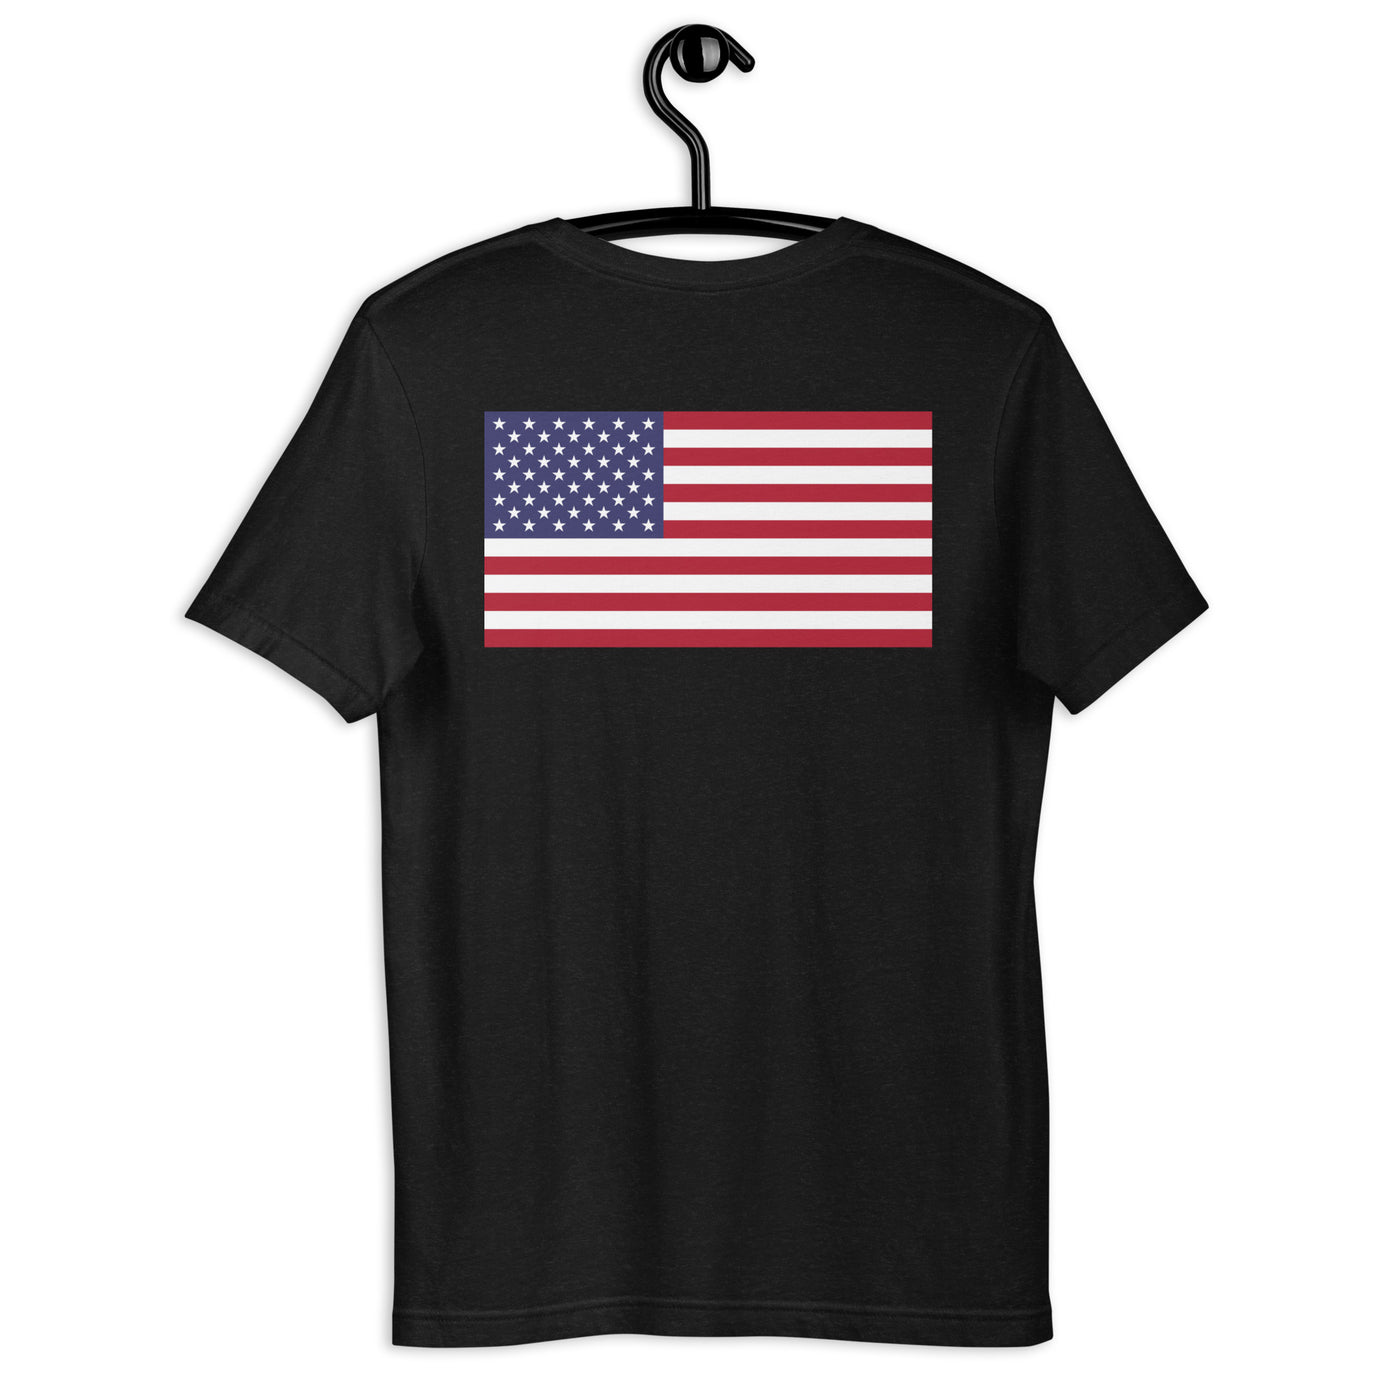 USA POR VIDA Unisex t-shirt